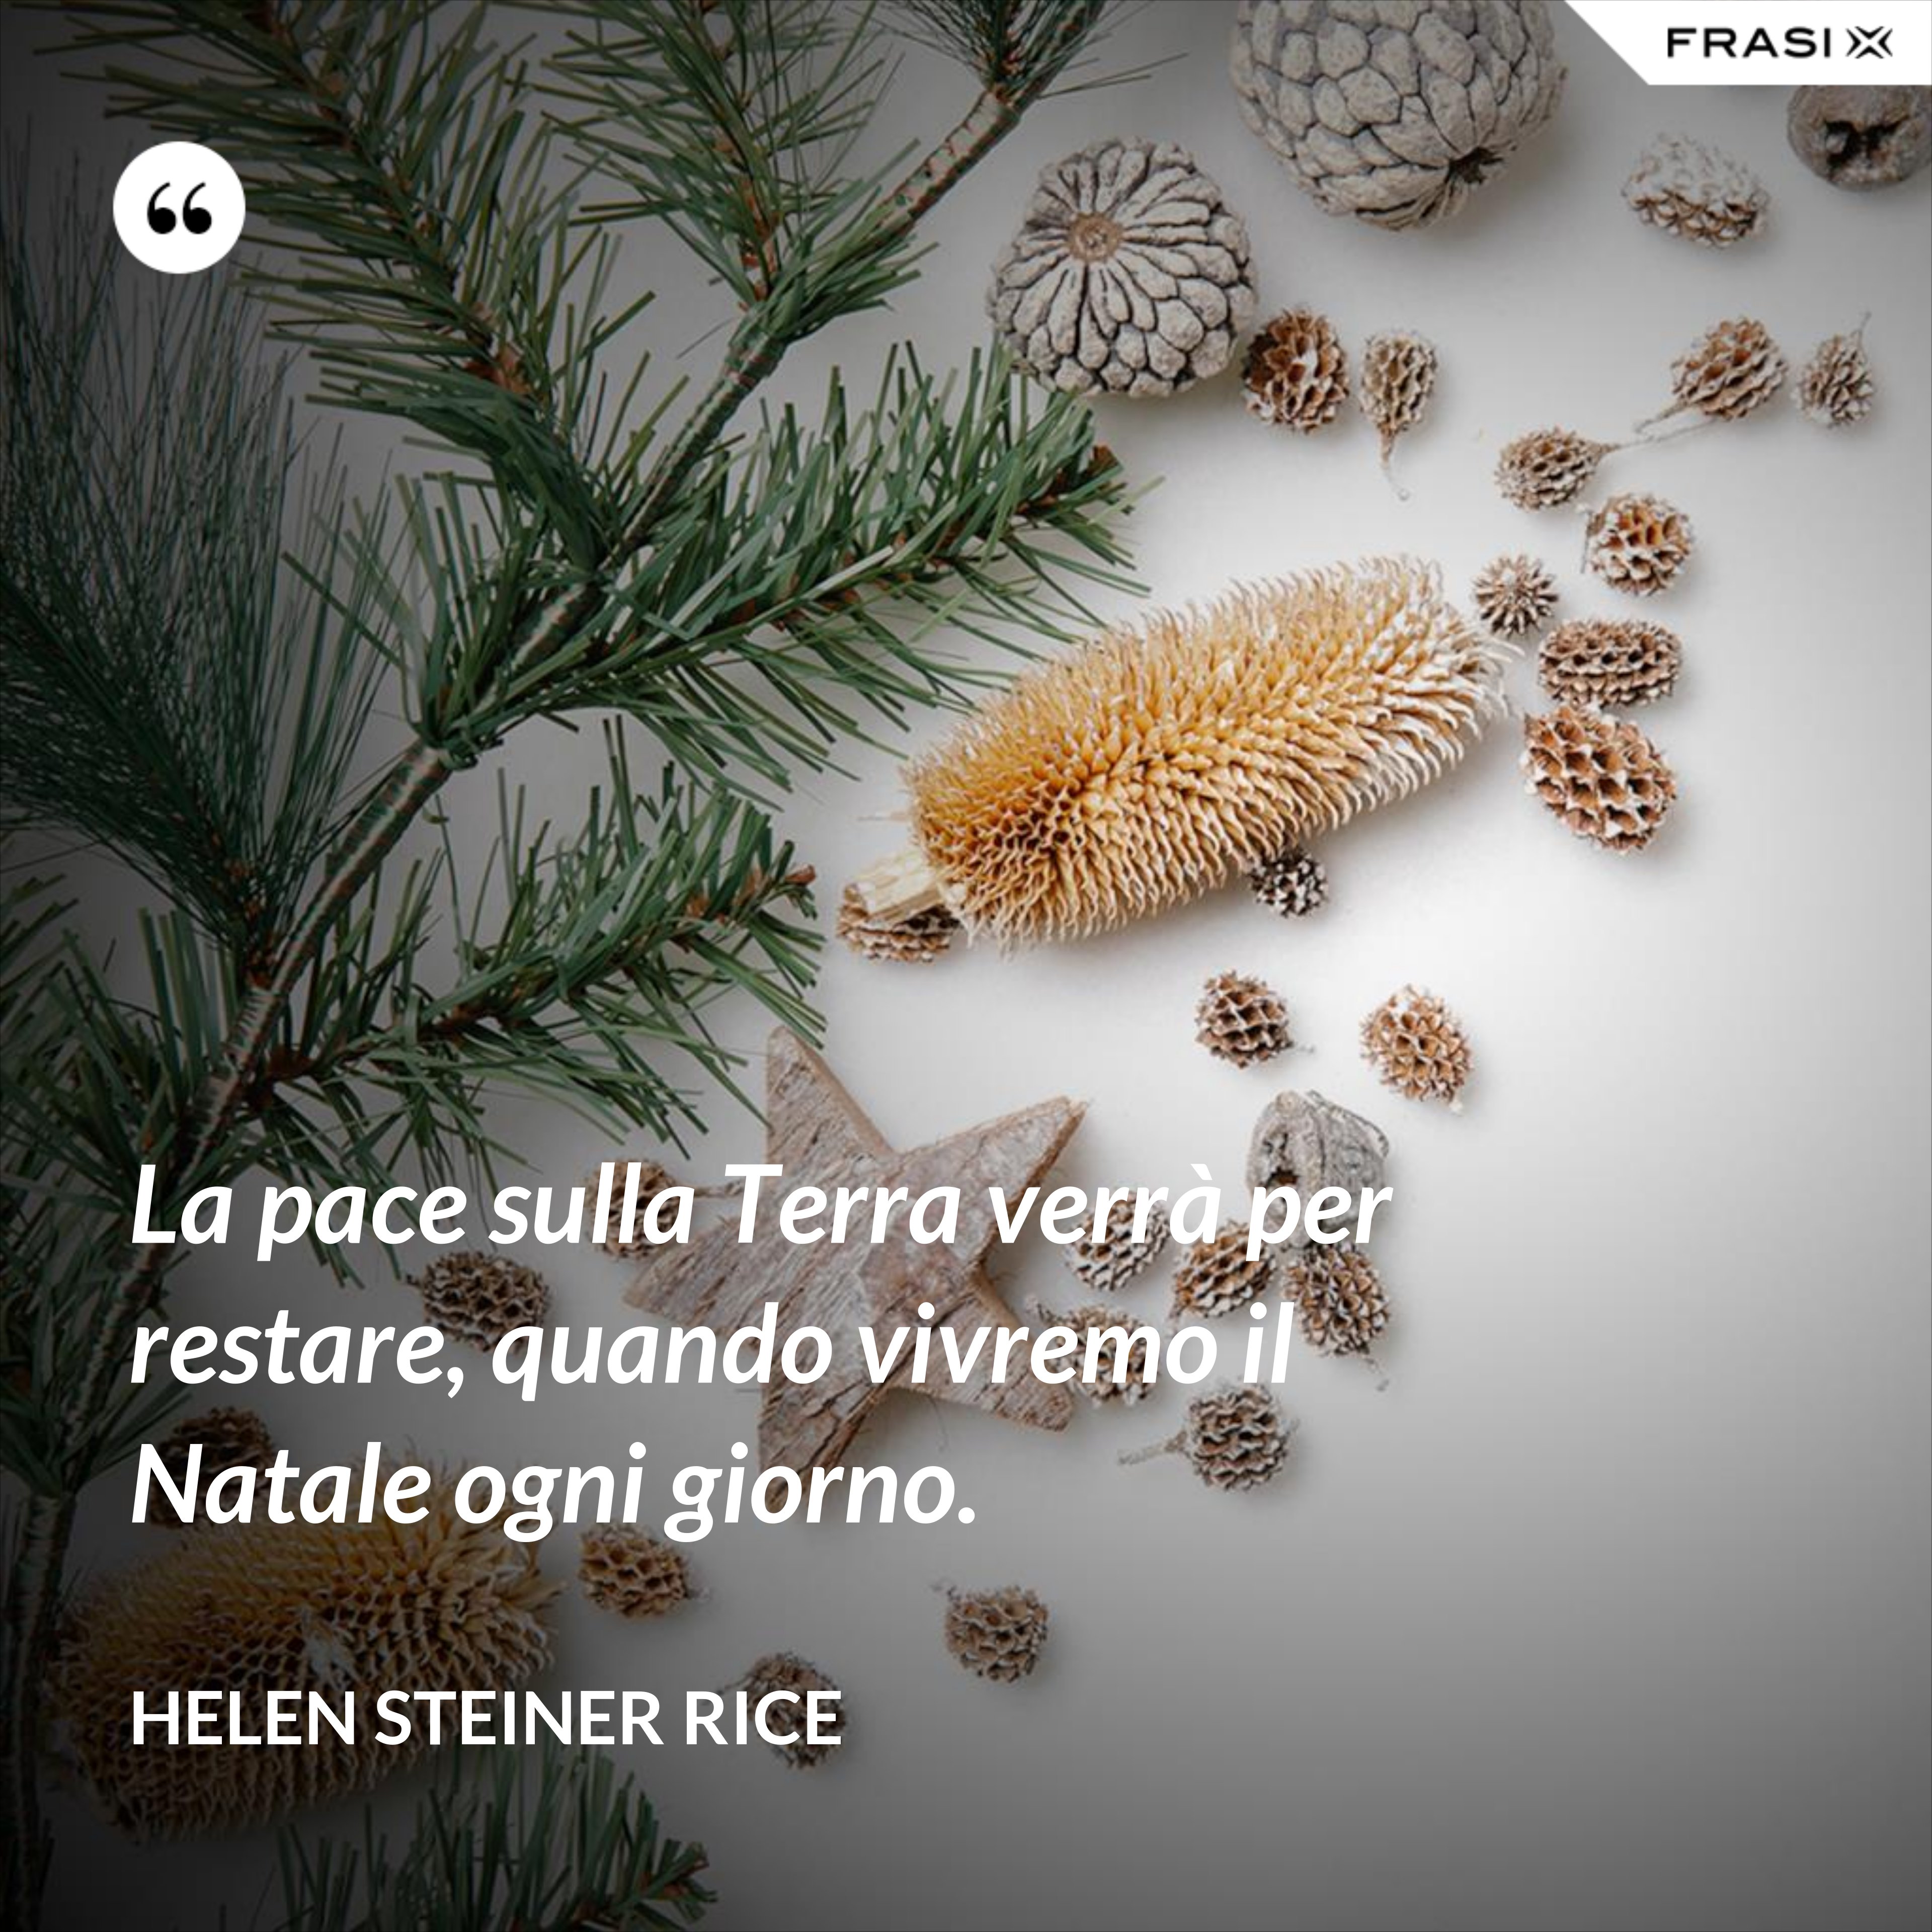 La pace sulla Terra verrà per restare, quando vivremo il Natale ogni giorno. - Helen Steiner Rice